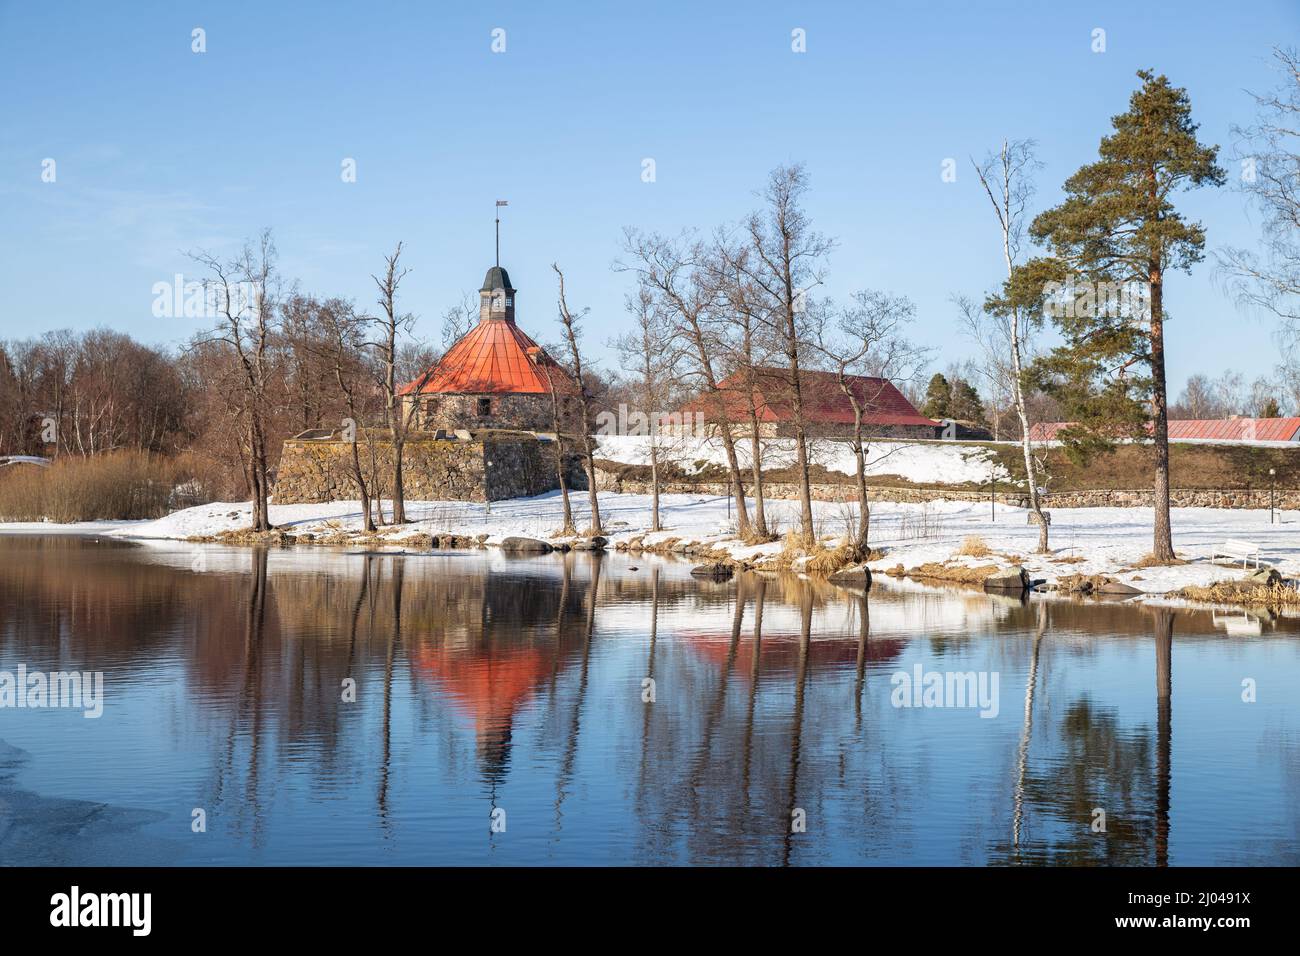 Die alte Festung Korela spiegelt sich im Wasser des Flusses Vuoksa wider. Frühlingshafte Naturlandschaft. Priozersk, Region Leningrad, Russland Stockfoto